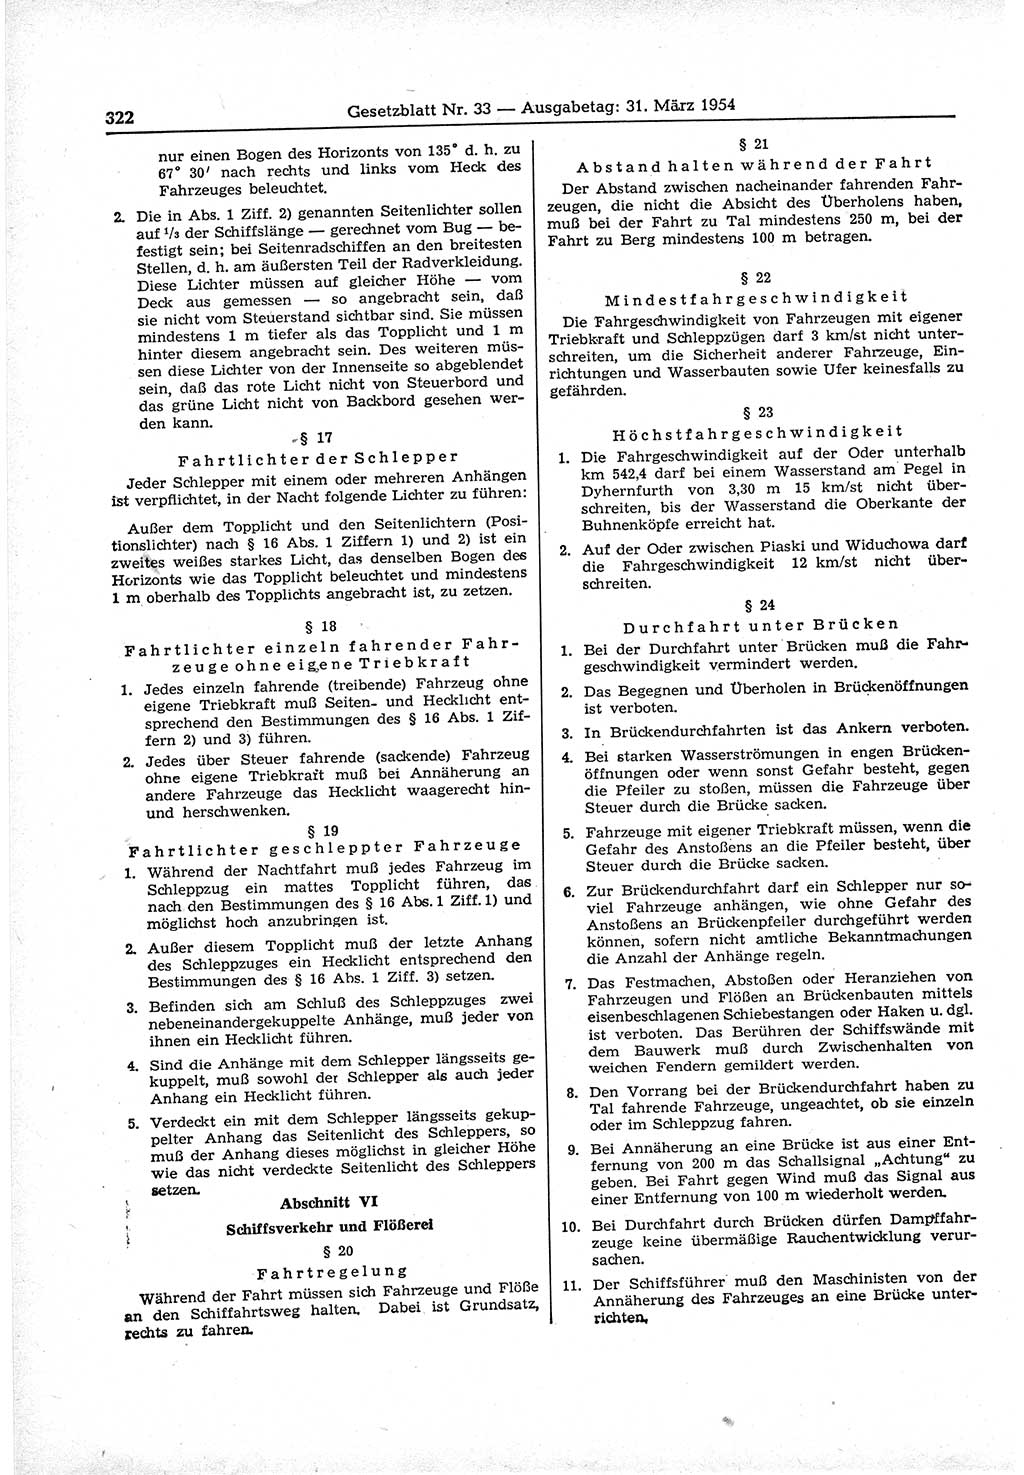 Gesetzblatt (GBl.) der Deutschen Demokratischen Republik (DDR) 1954, Seite 322 (GBl. DDR 1954, S. 322)